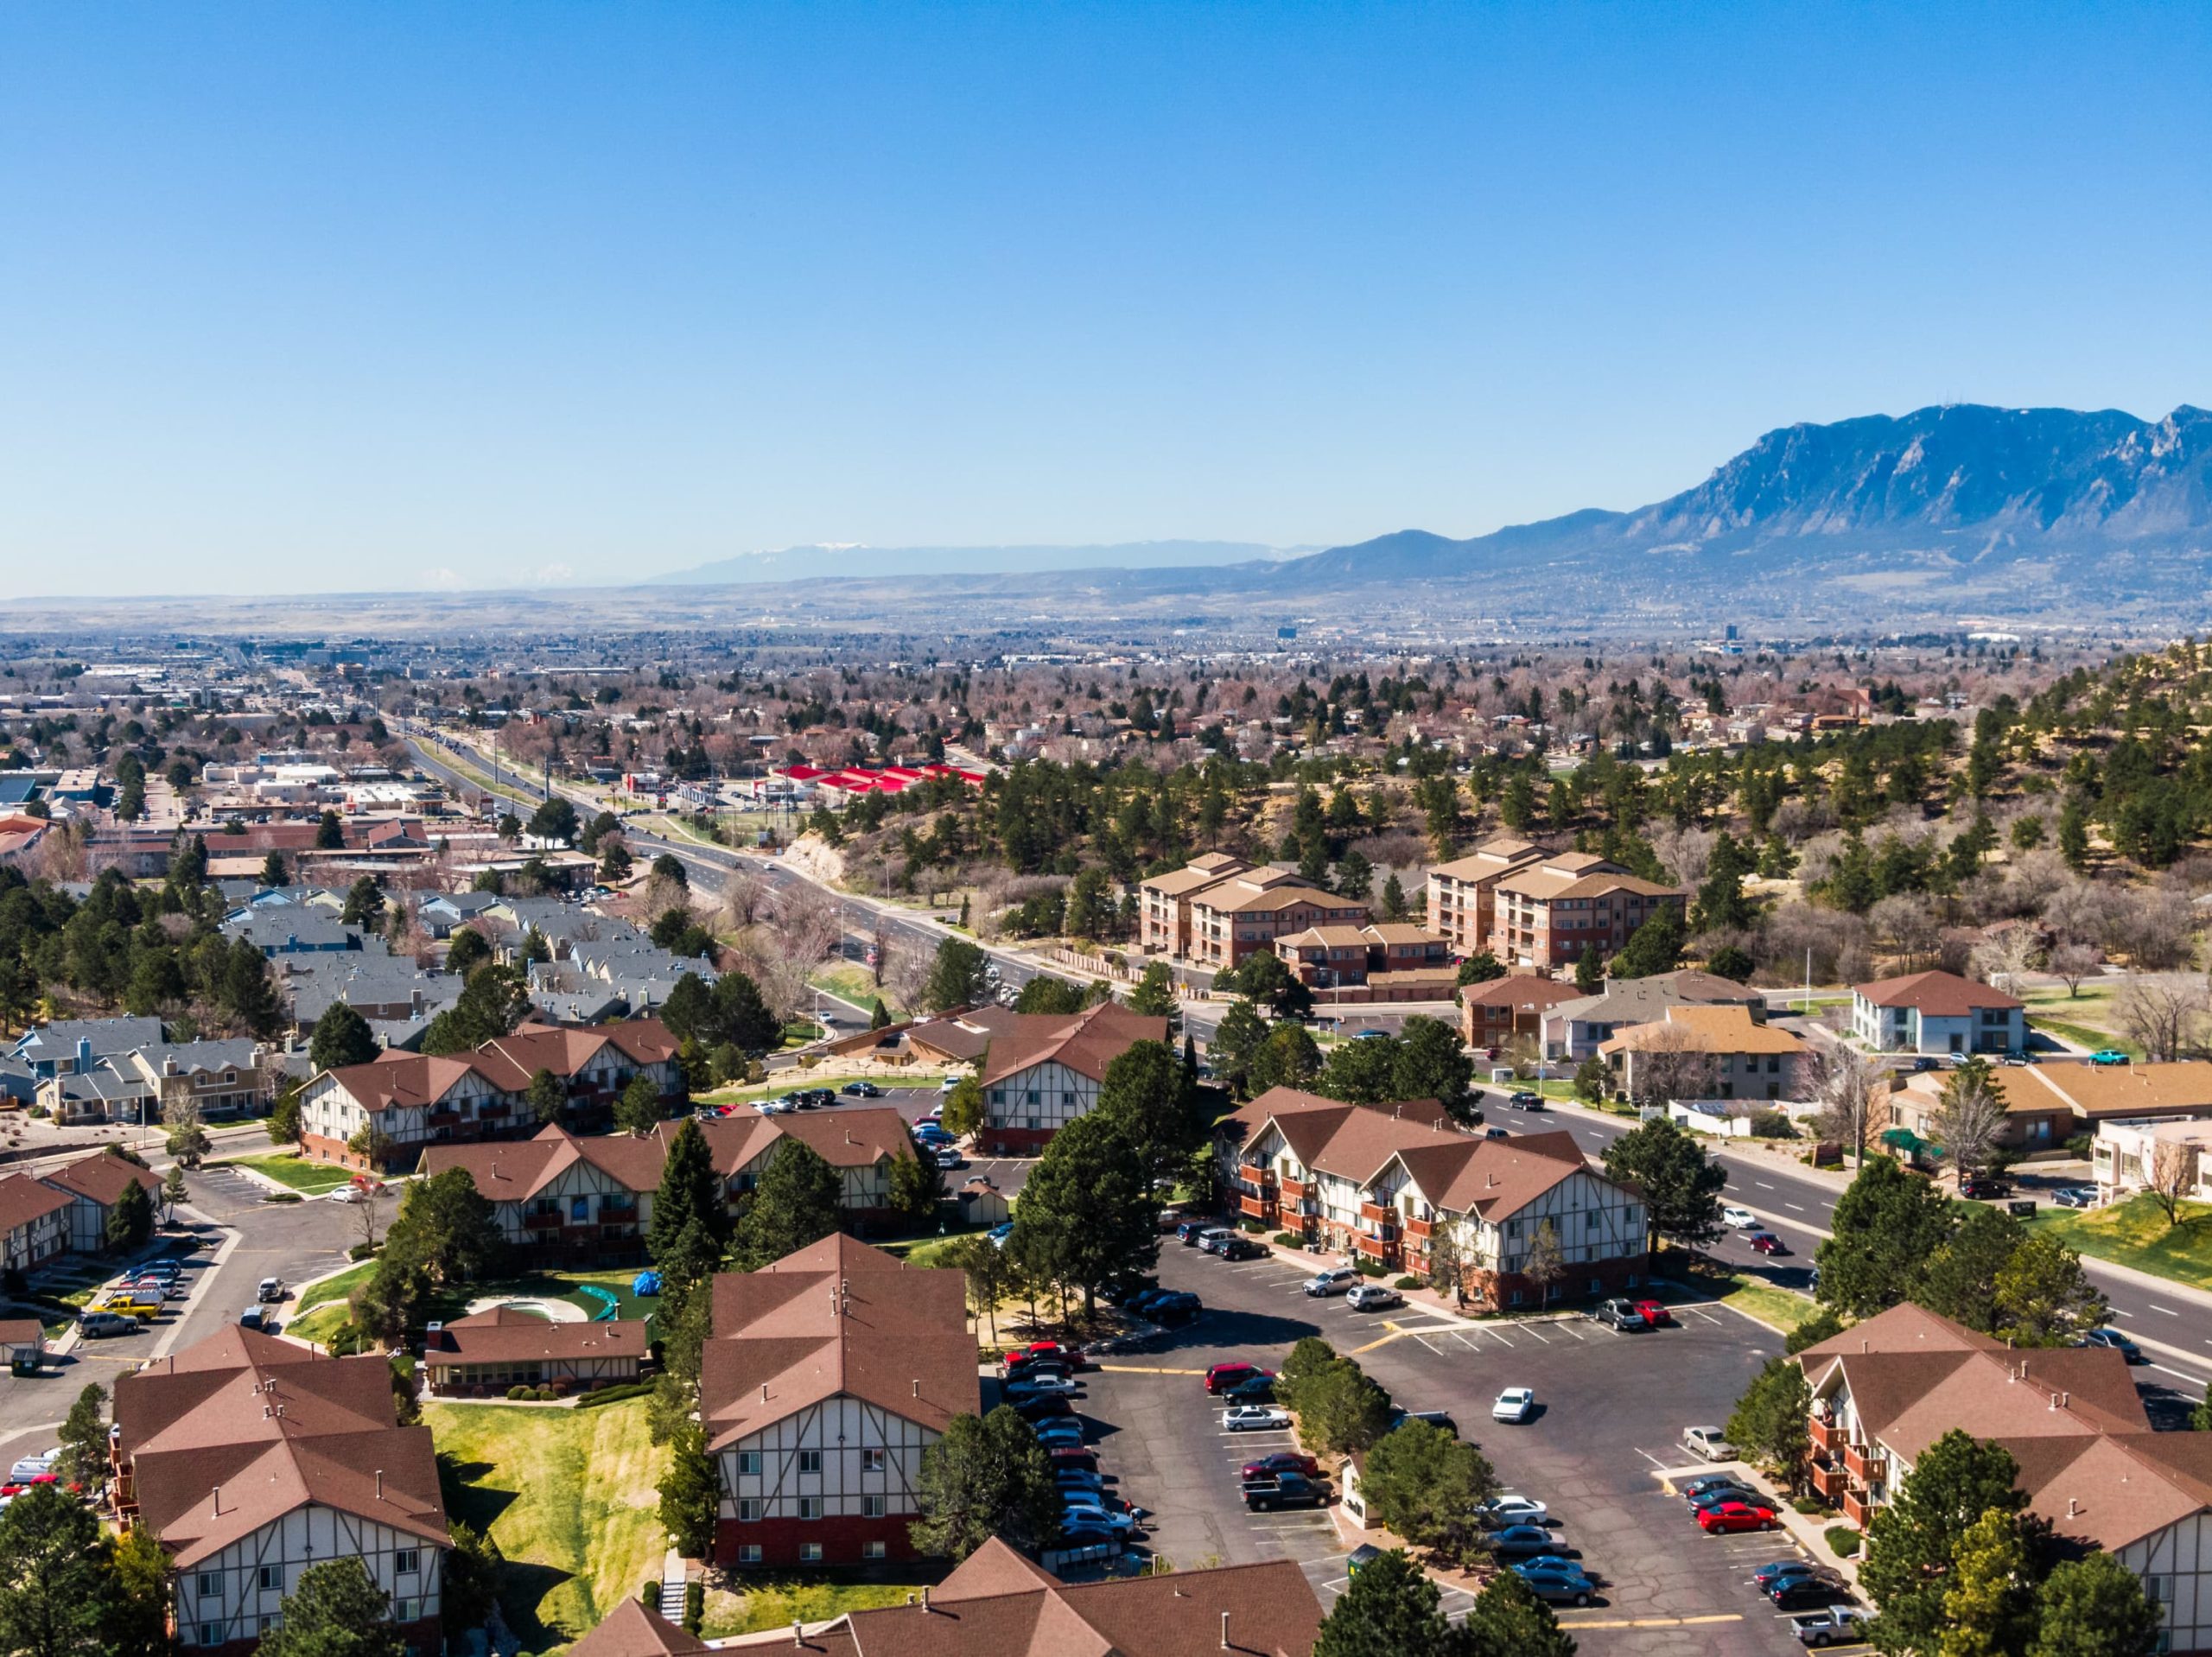 Aerial view of a neighborhood in Colorado Springs.